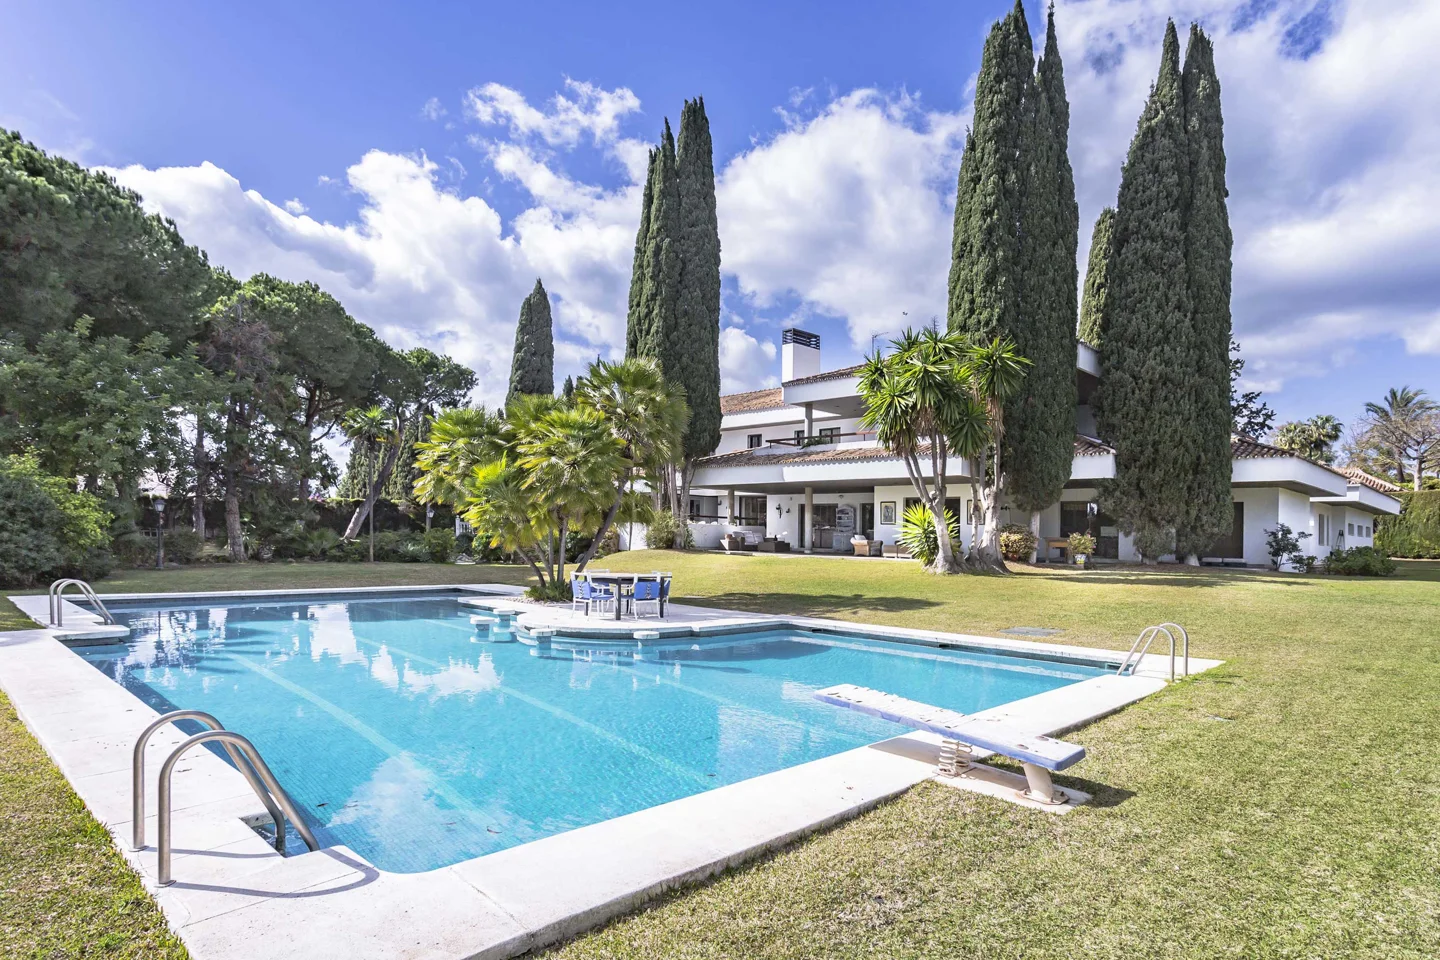 Elegante villa de estilo contemporáneo en Guadalmina Beachside, a poca distancia de la playa y con una gran parcela